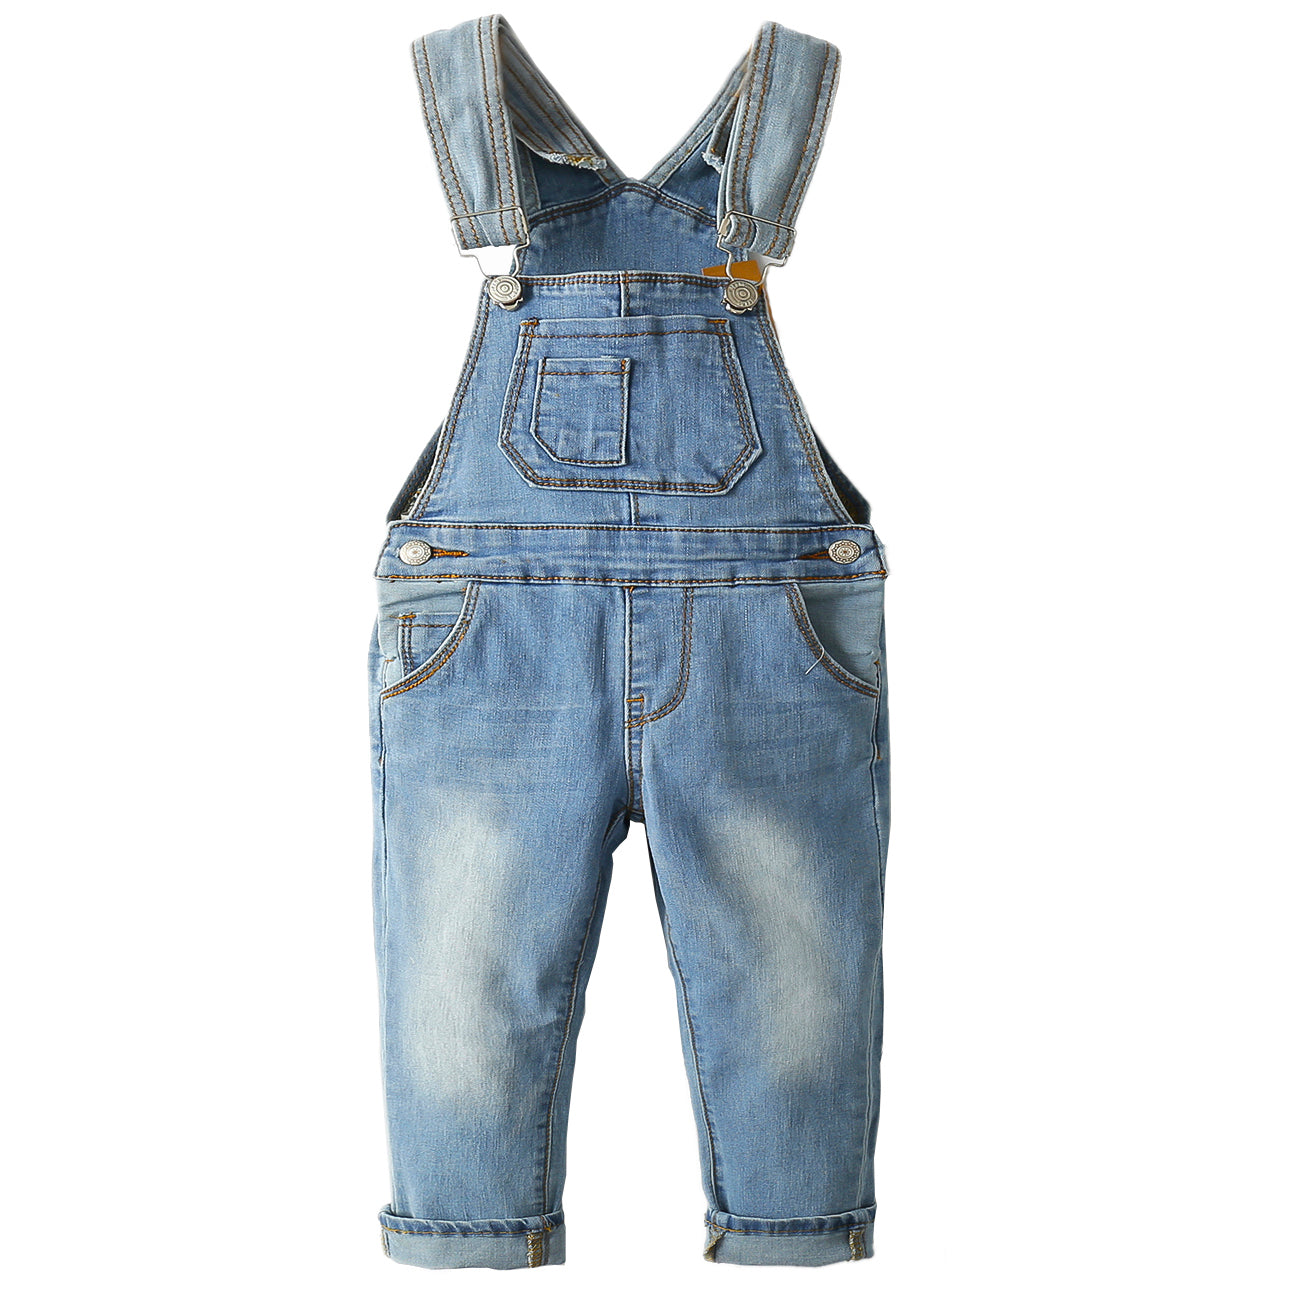 Toddler Adjustable Light Blue Washed Jeans Overalls